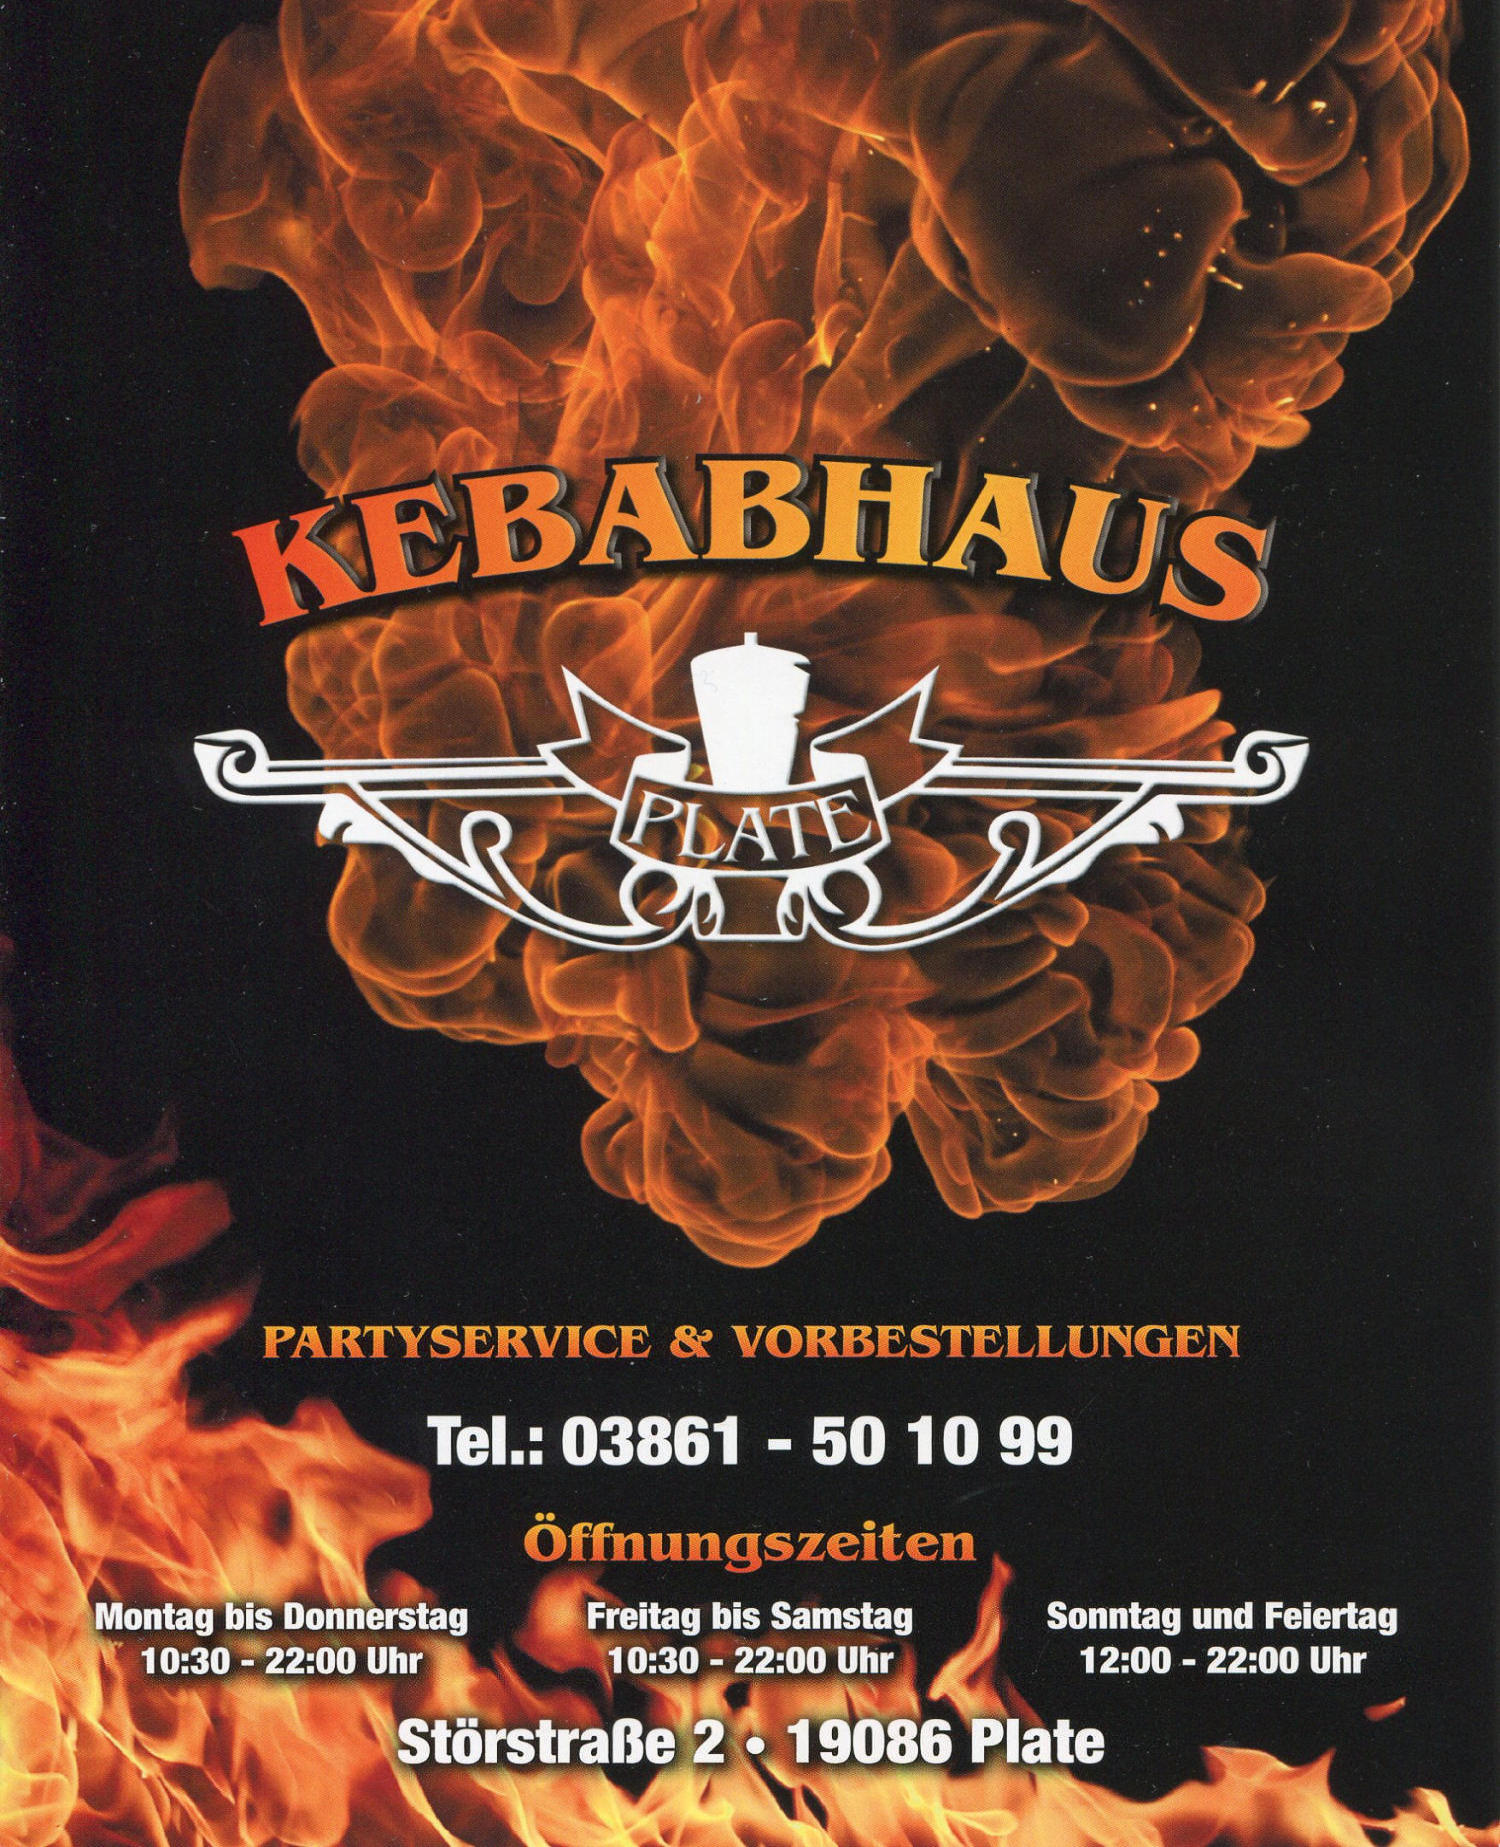 Kebabhaus01